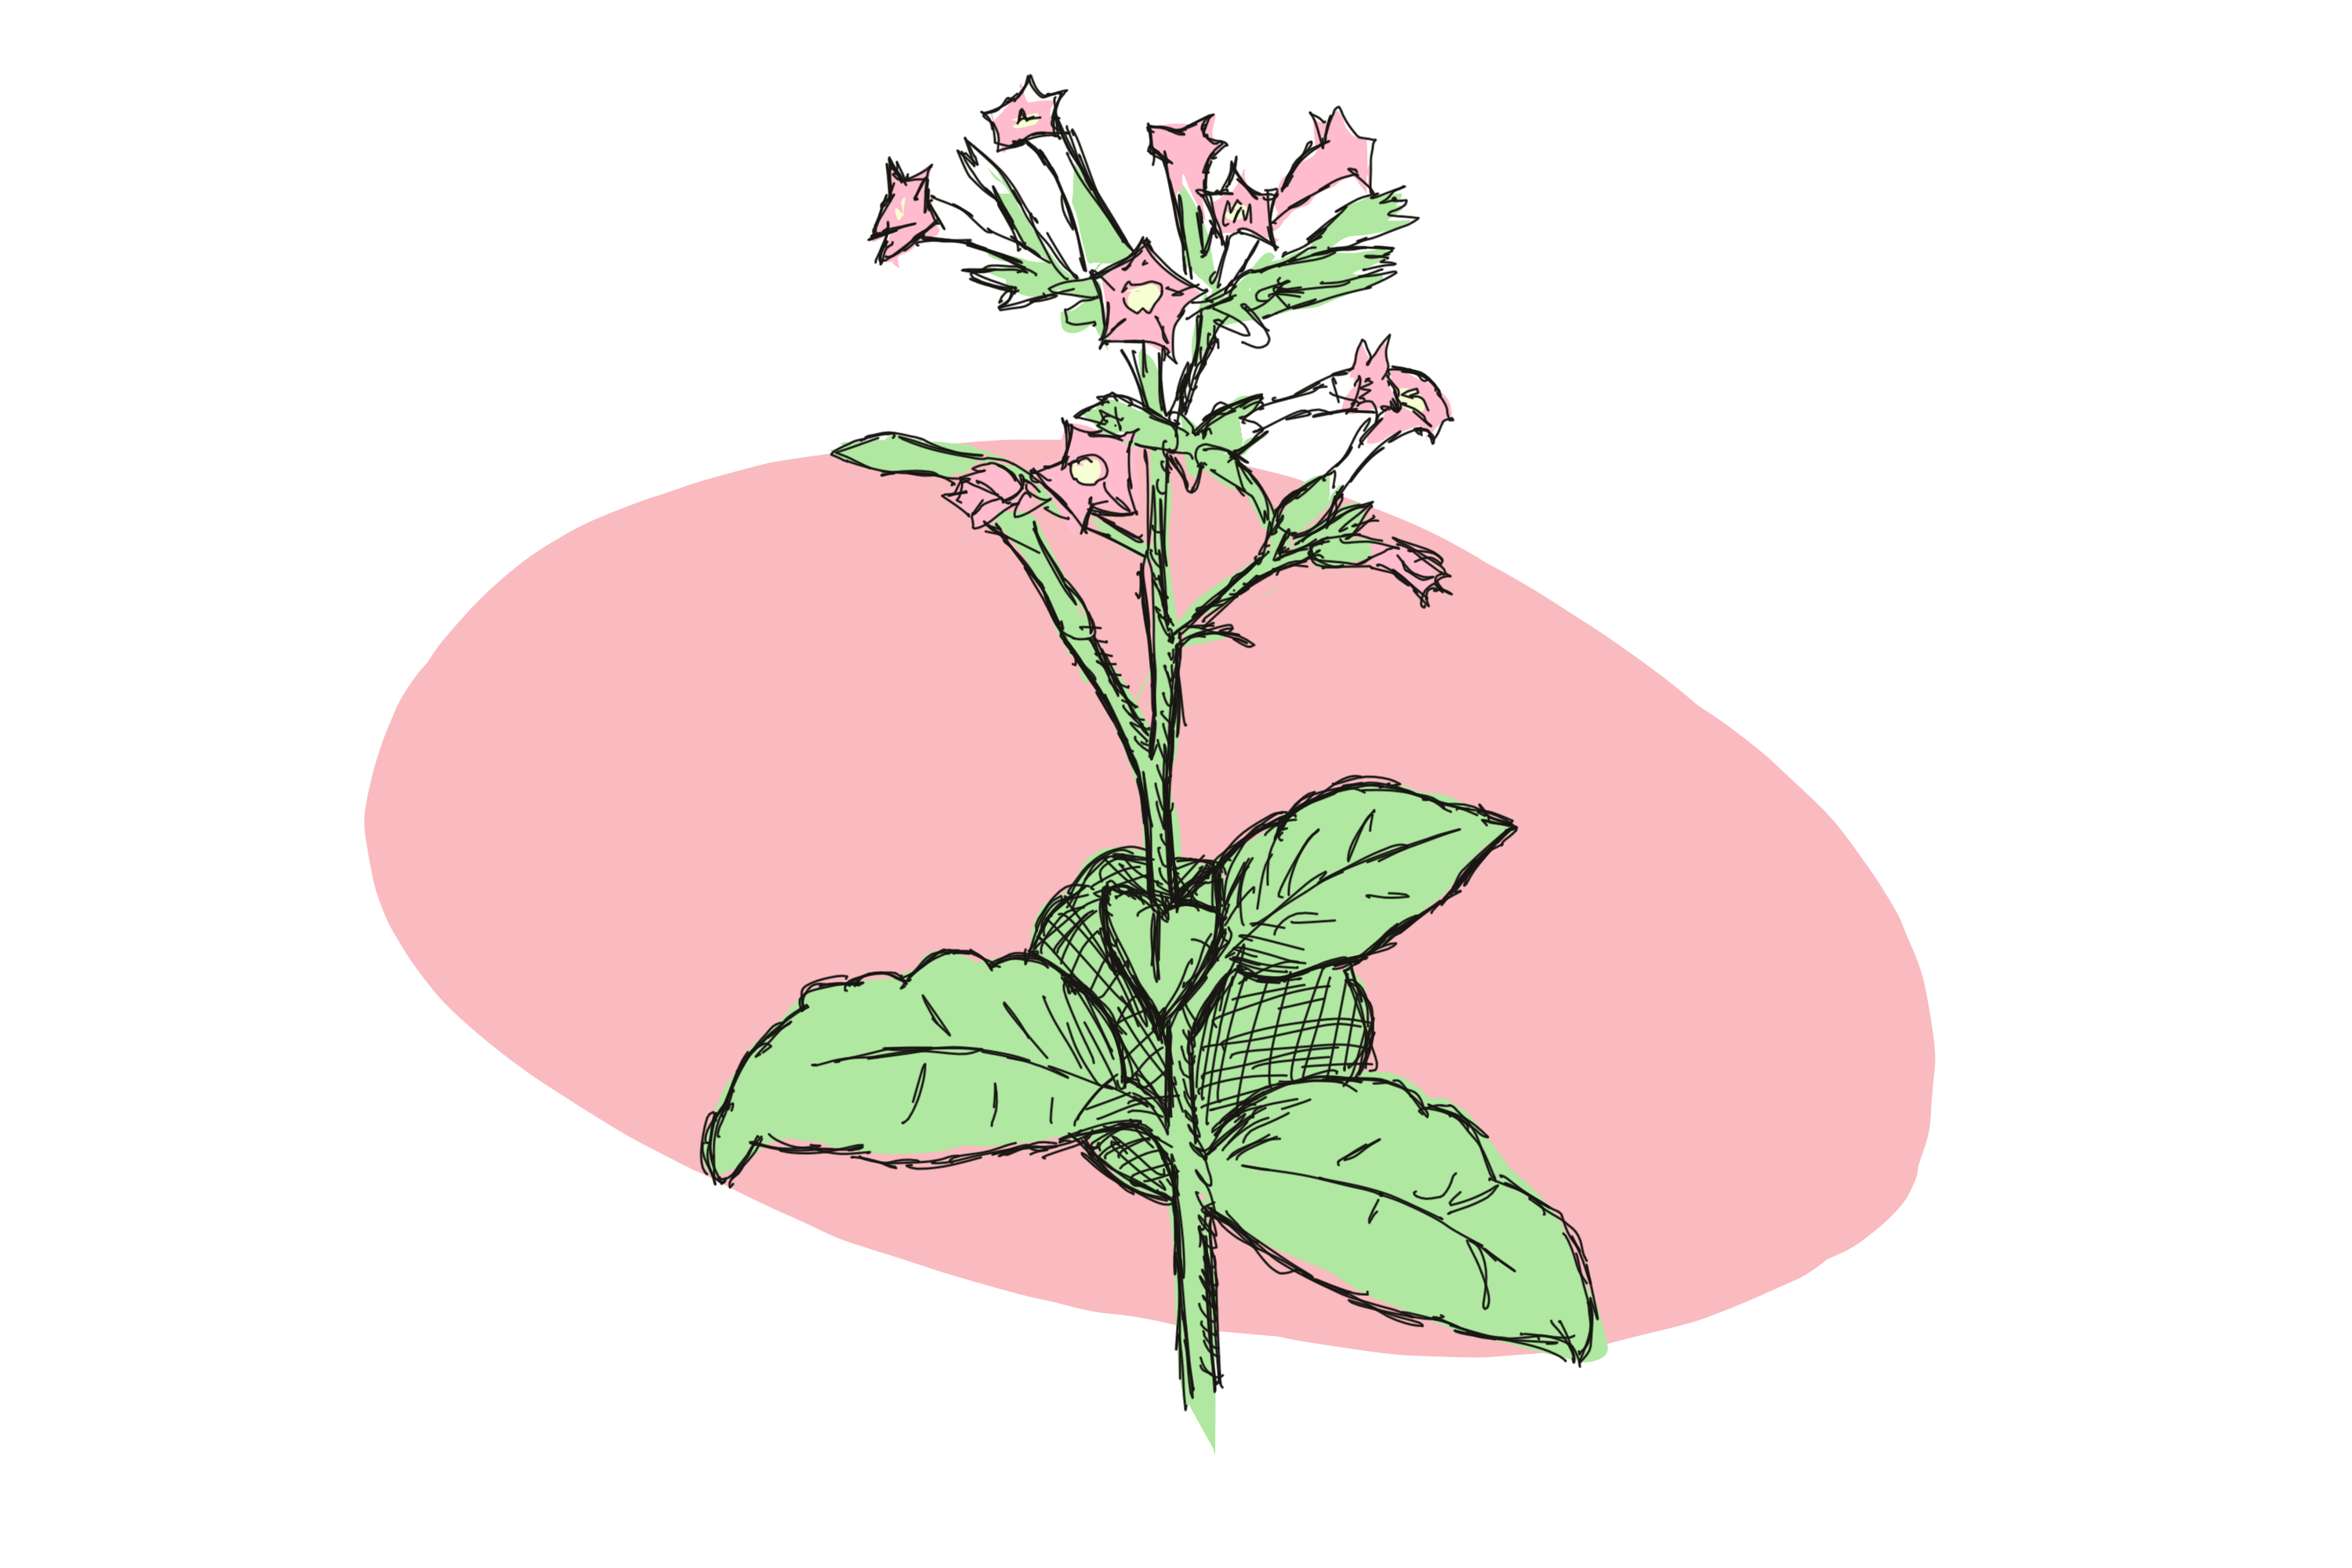 Lab Rats Part II: the ‘Cinderella’ plant